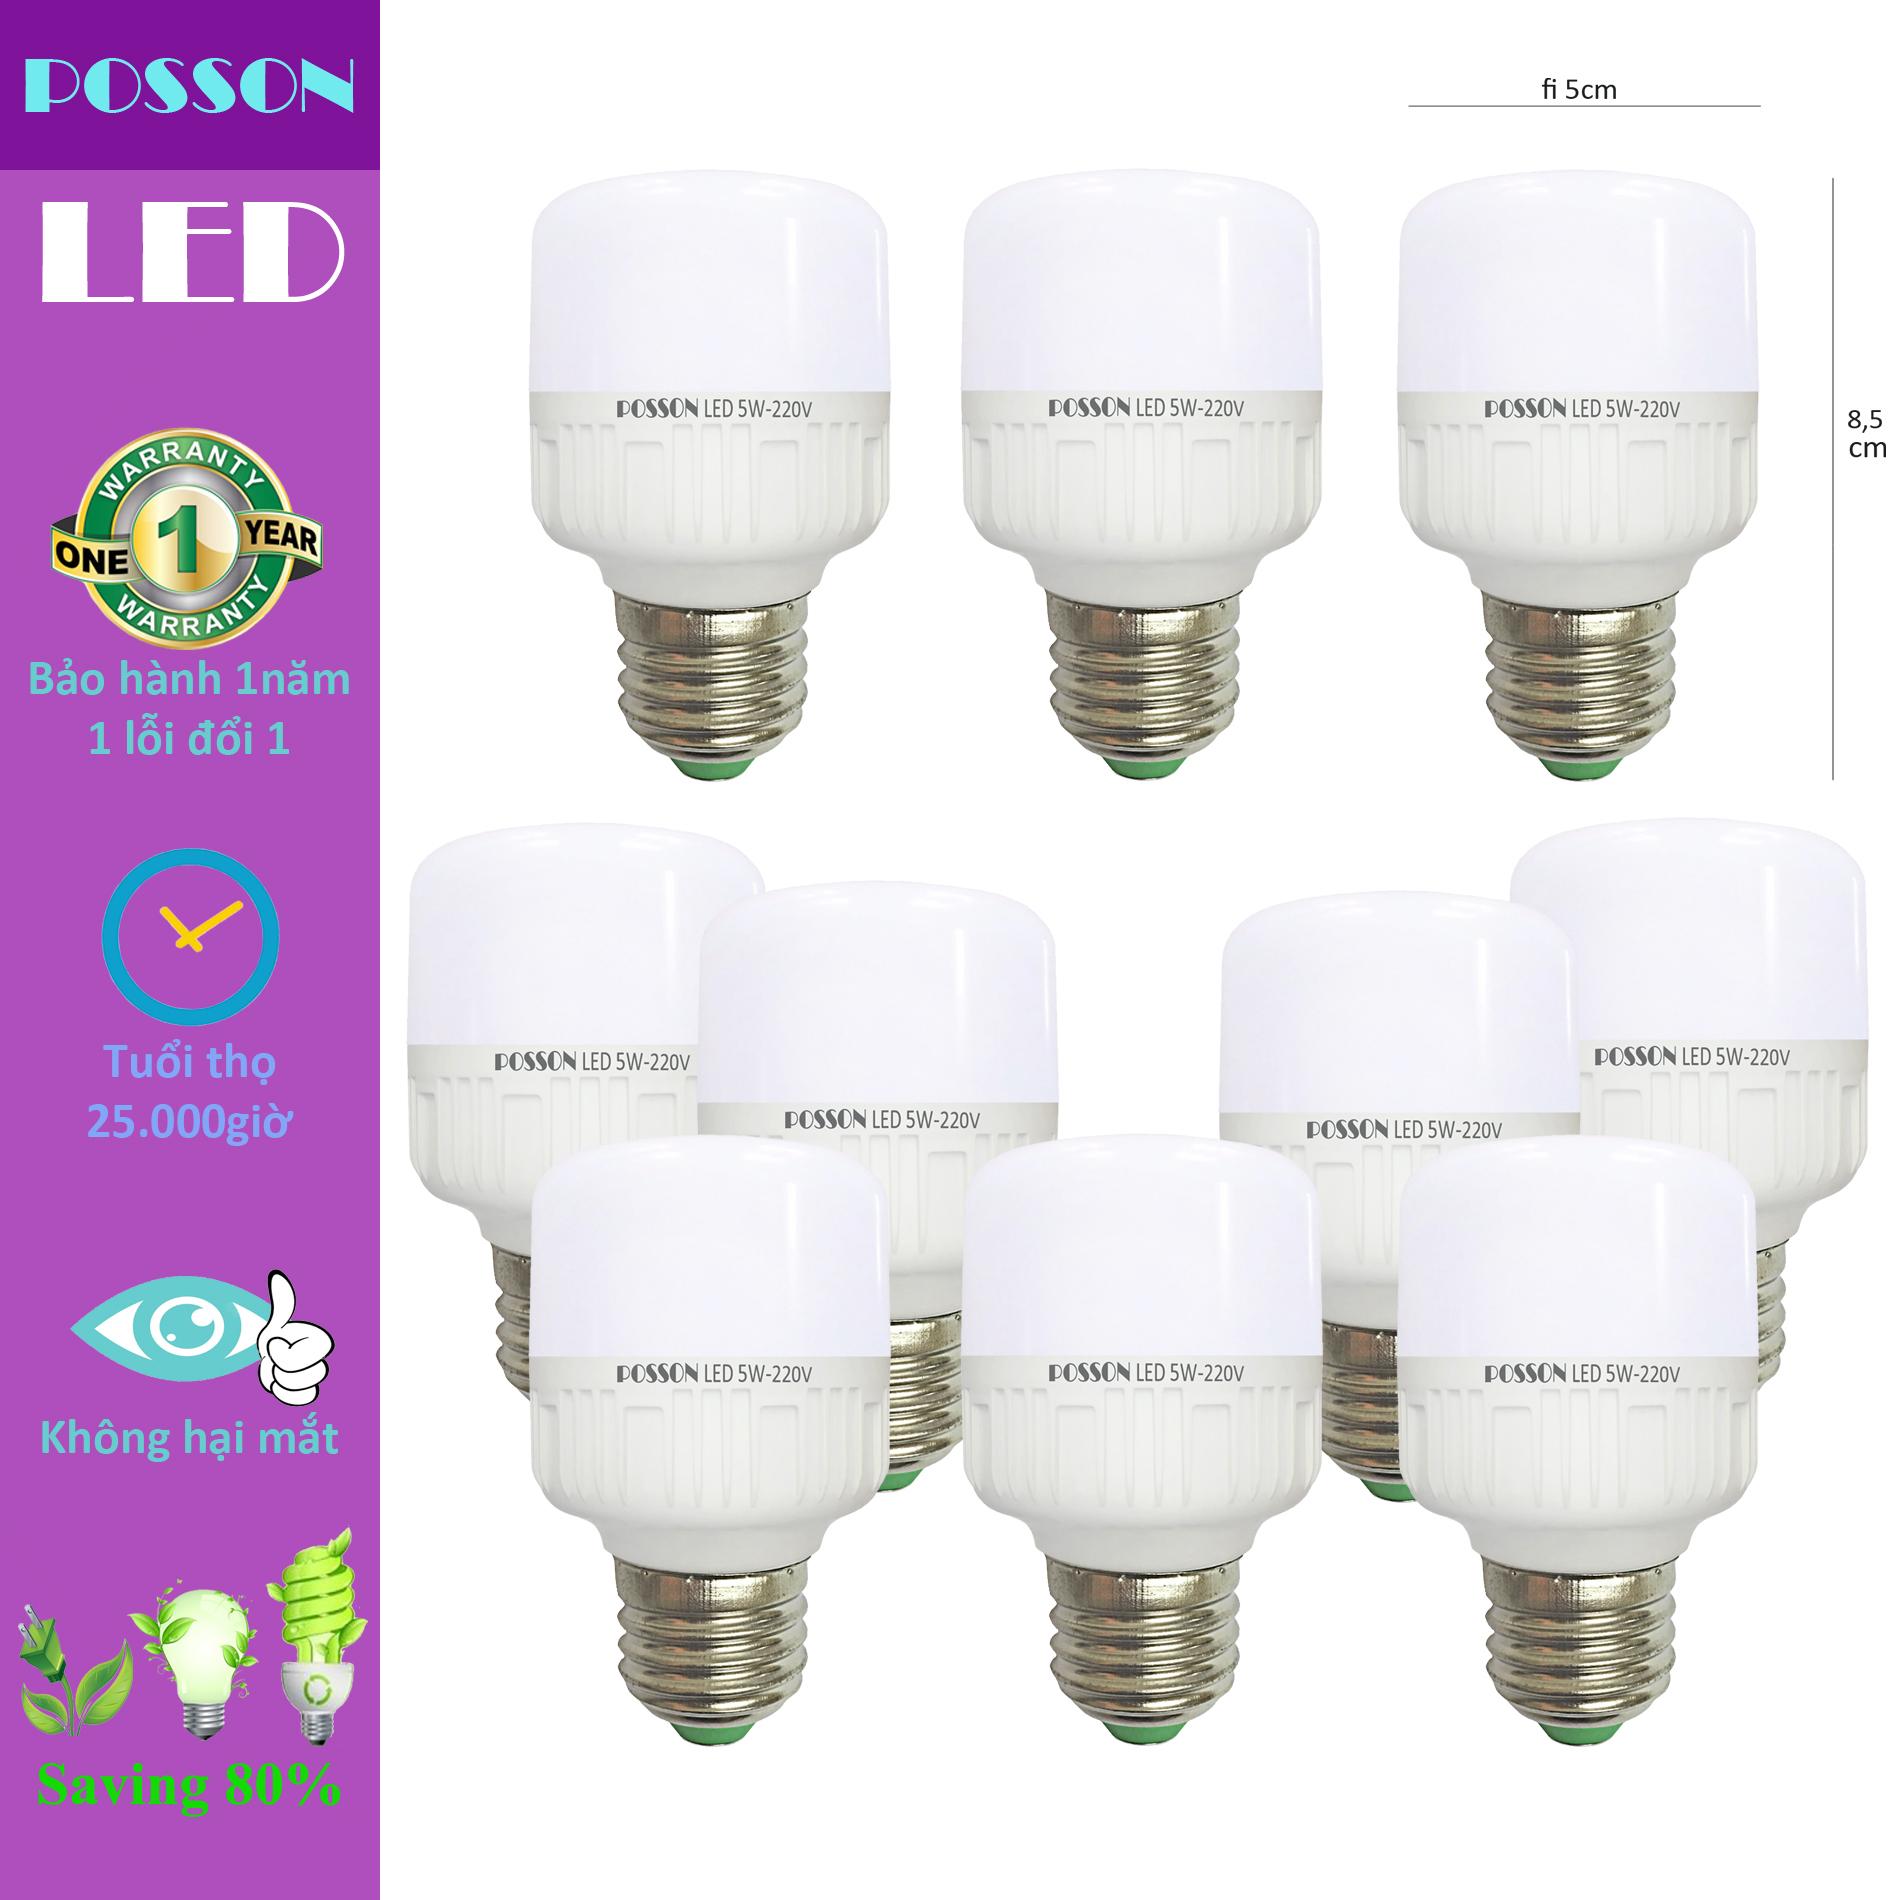 10 Bóng đèn Led trụ 5w tiết kiệm điện sáng trắng Posson LC-N5